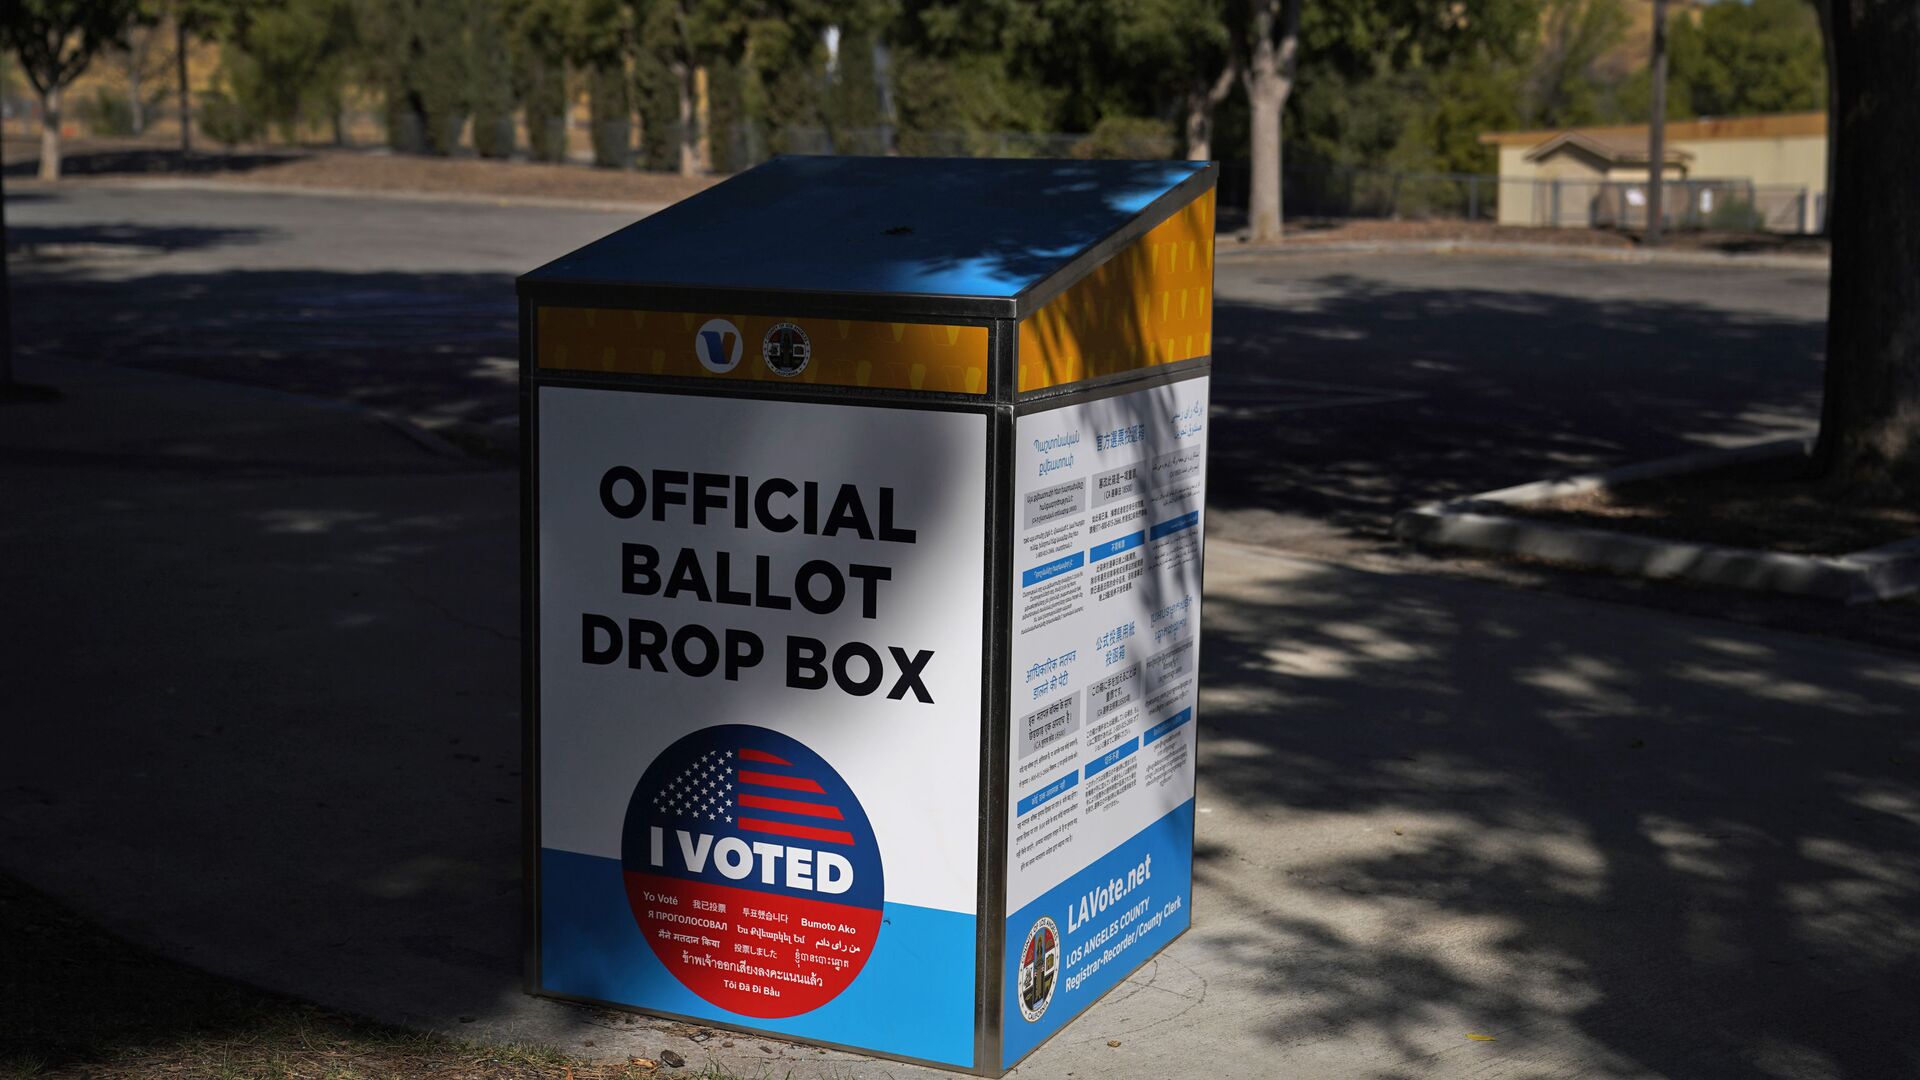 An official ballot drop box is seen Wednesday, Oct. 14, 2020, in Santa Clarita, Calif. - Sputnik International, 1920, 04.03.2021